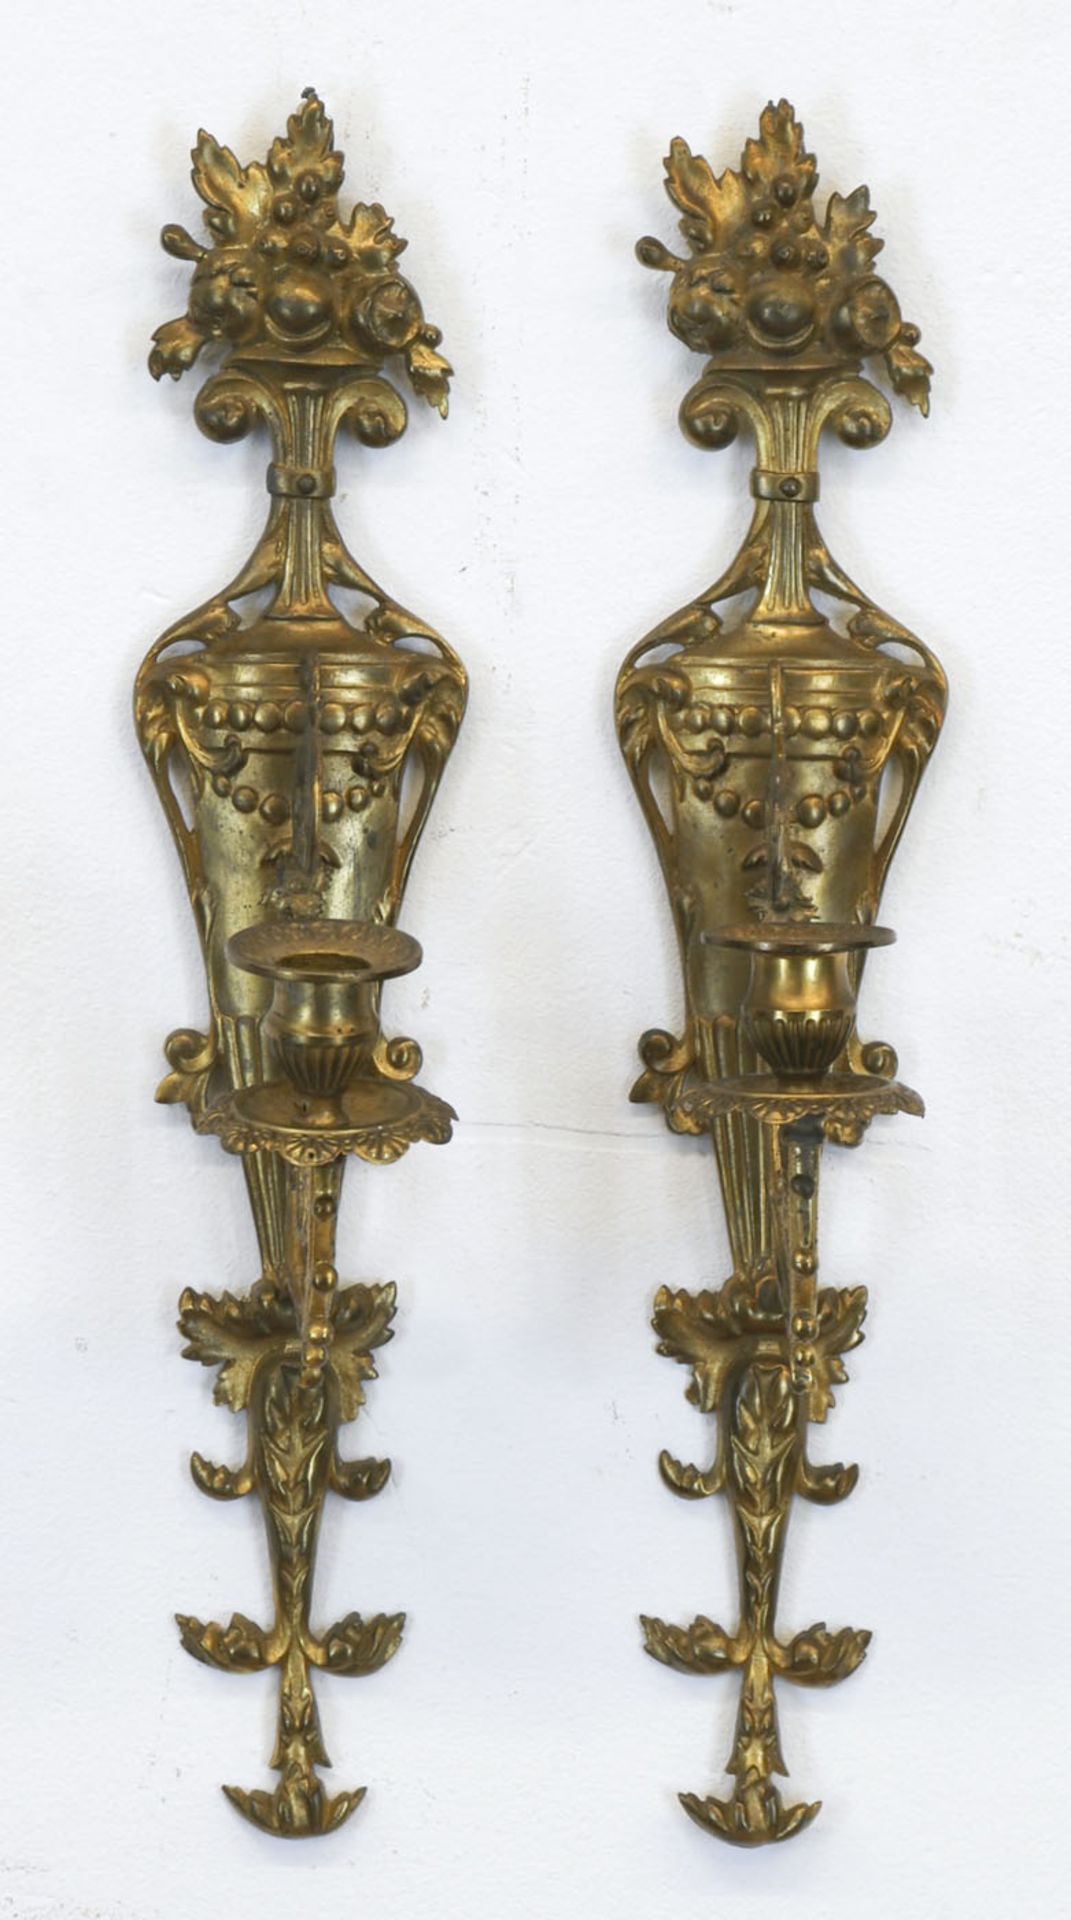 Paar Wandleuchter, um 1850, Bronze, vergoldet, vasenförmig, floral reliefiert, 1 Leuchterarm